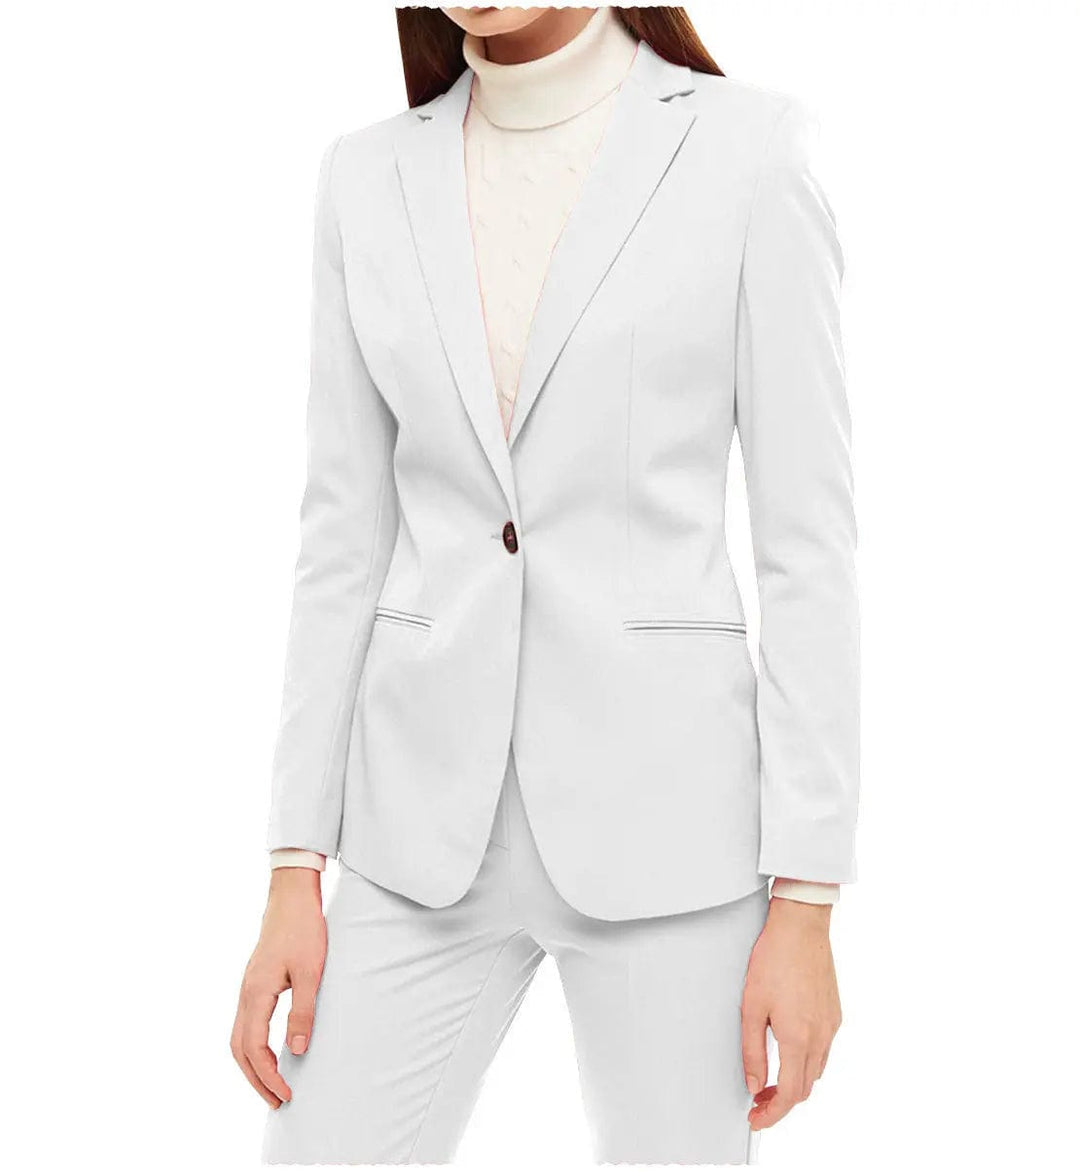 solovedress Business 2 Pieces Women Suit Notch Lapel Blazer